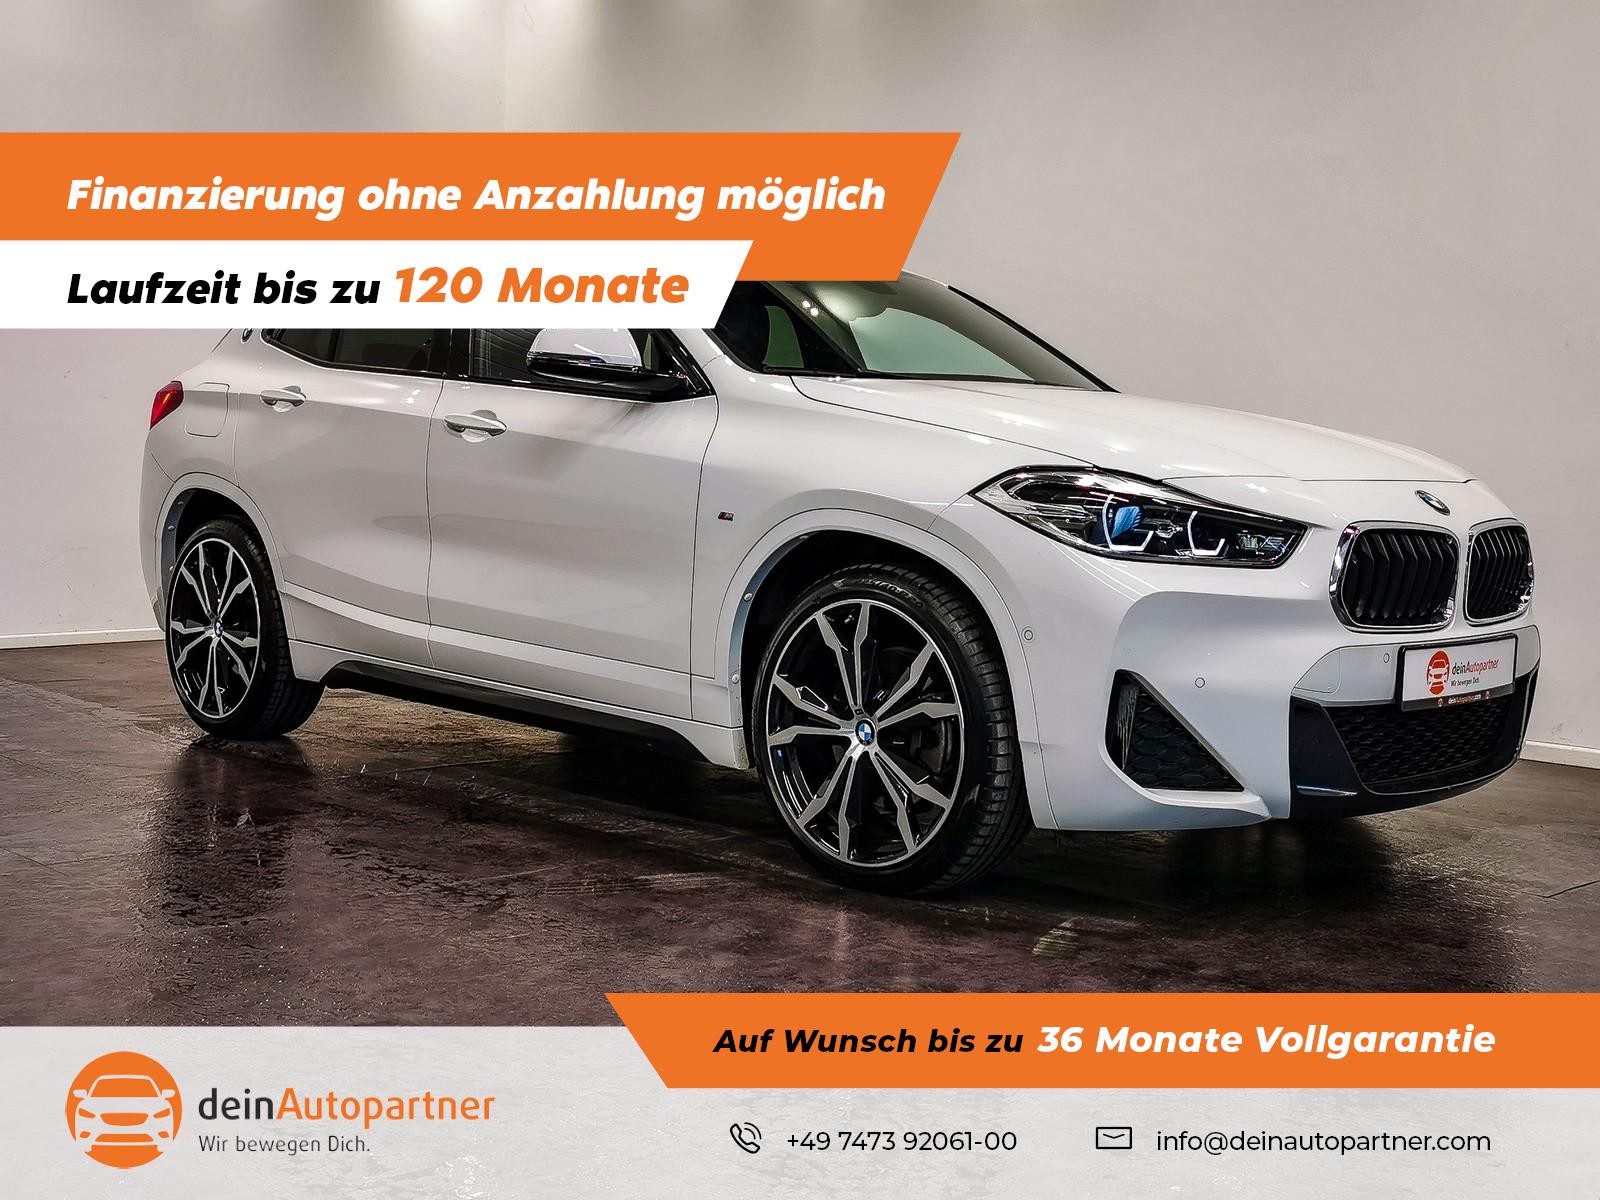 BMW X2 xDrive 20i M Sport gebraucht kaufen in Mössingen Preis 30800 eur -  Int.Nr.: S24859